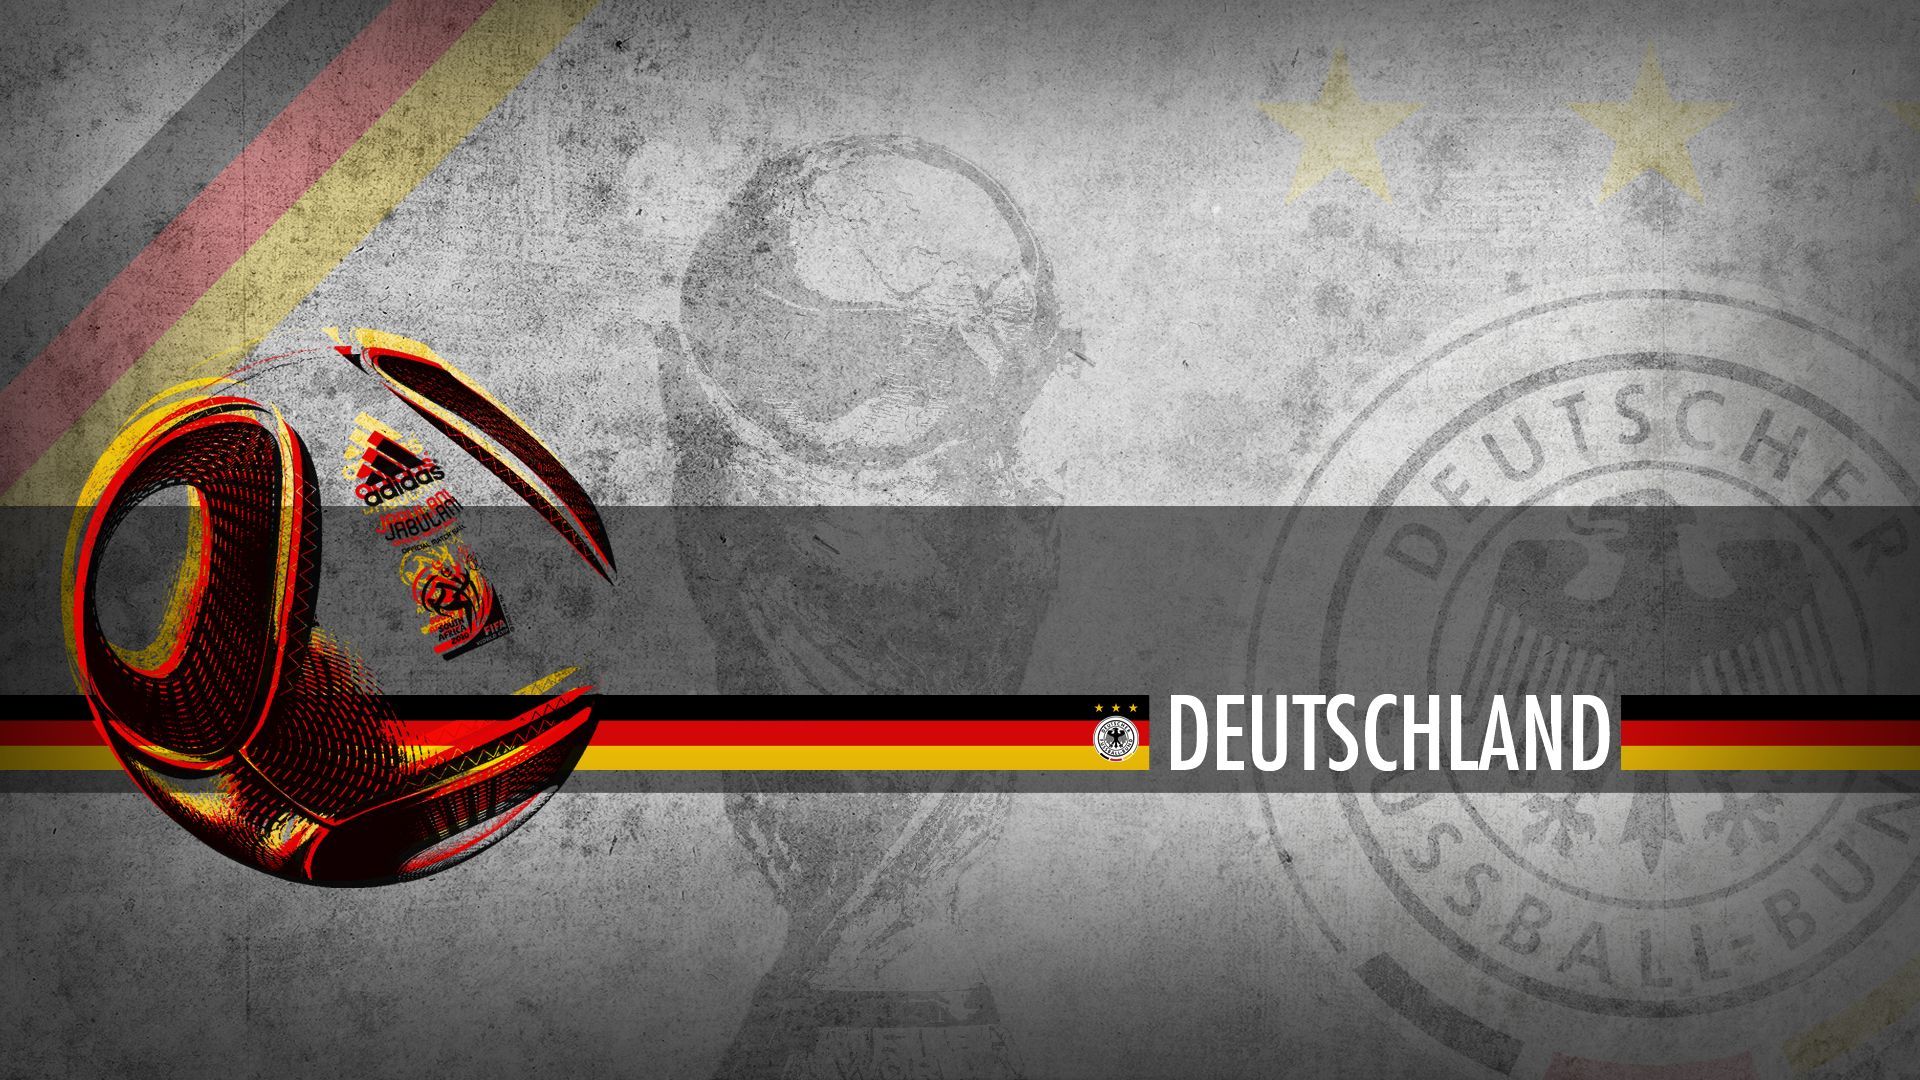 Germany National Football Team Wallpaper: Die Mannschaft. Germany national football team, Team wallpaper, Germany football